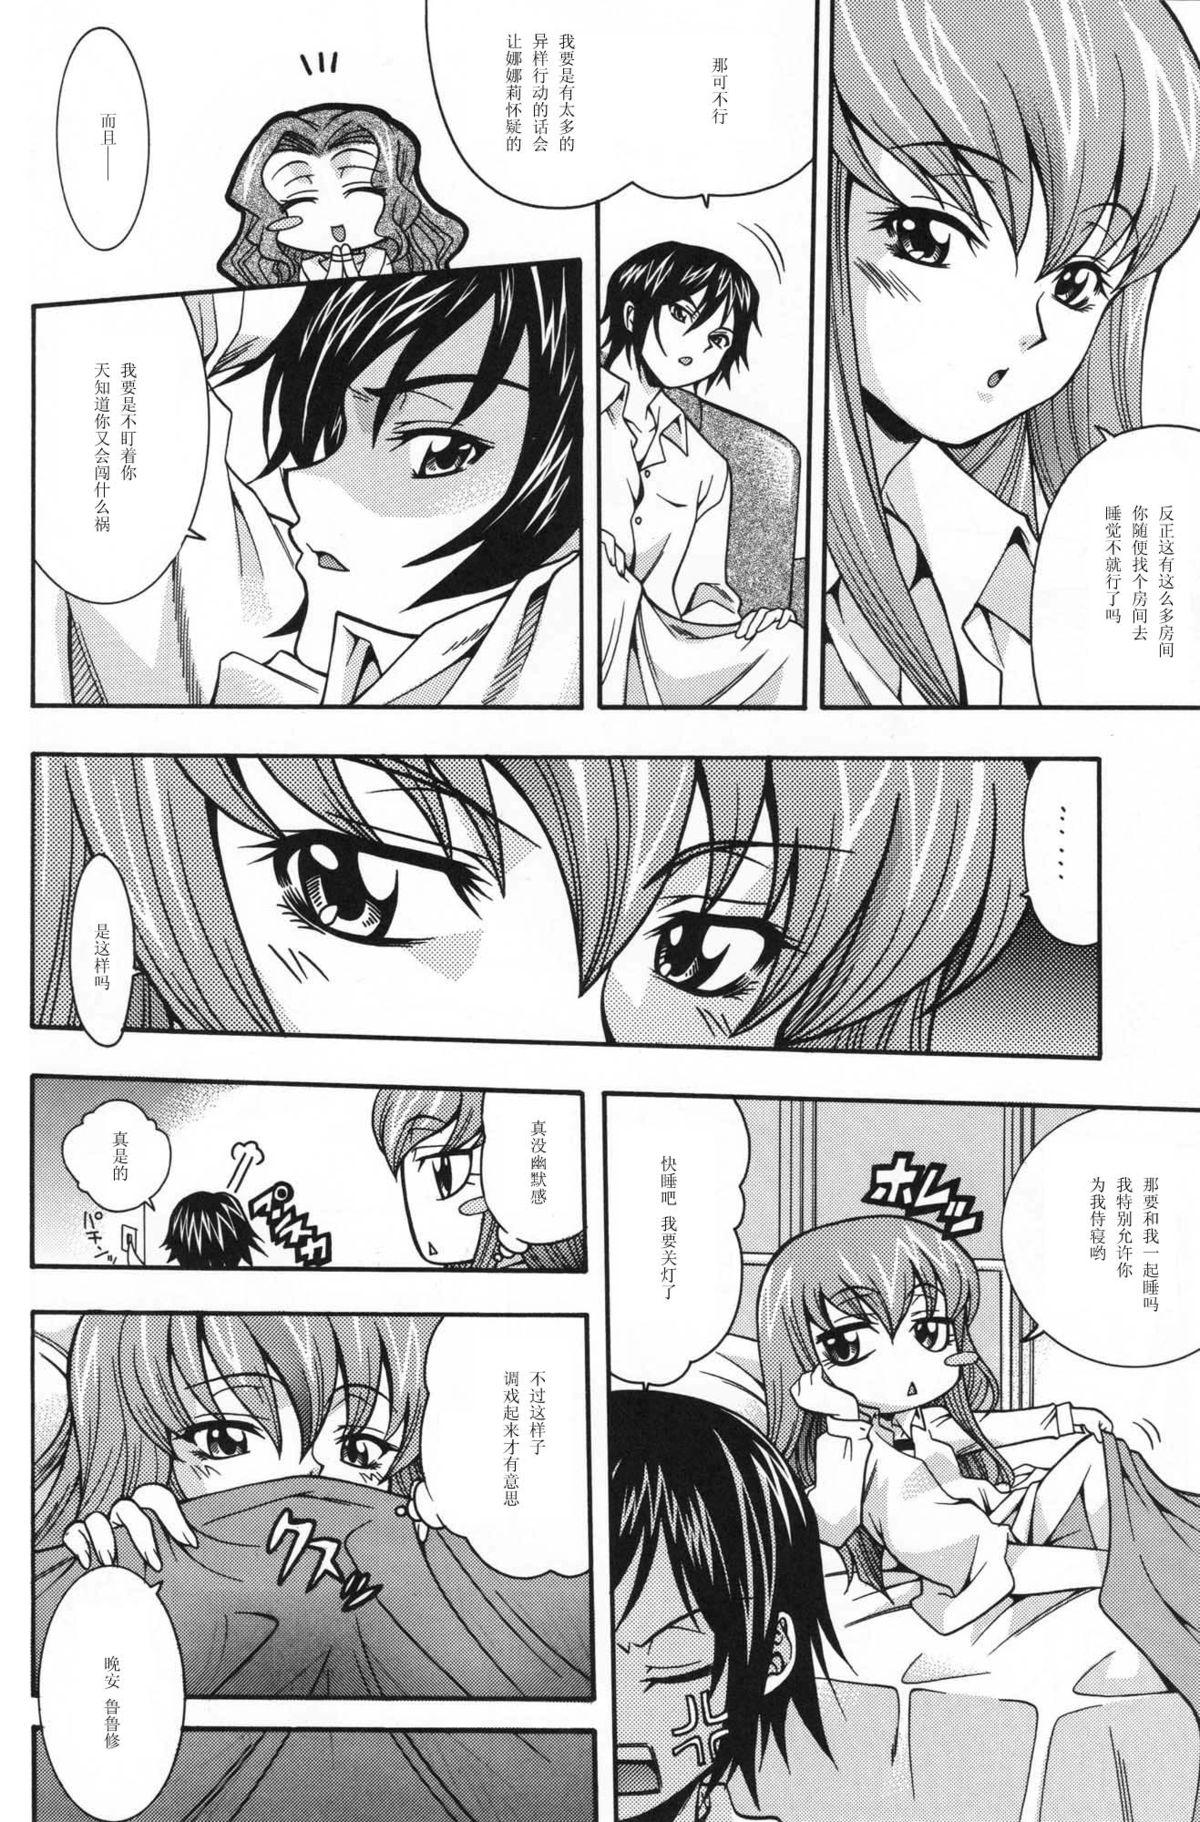 Que Nichijouno Senjouno - Code geass People Having Sex - Page 5